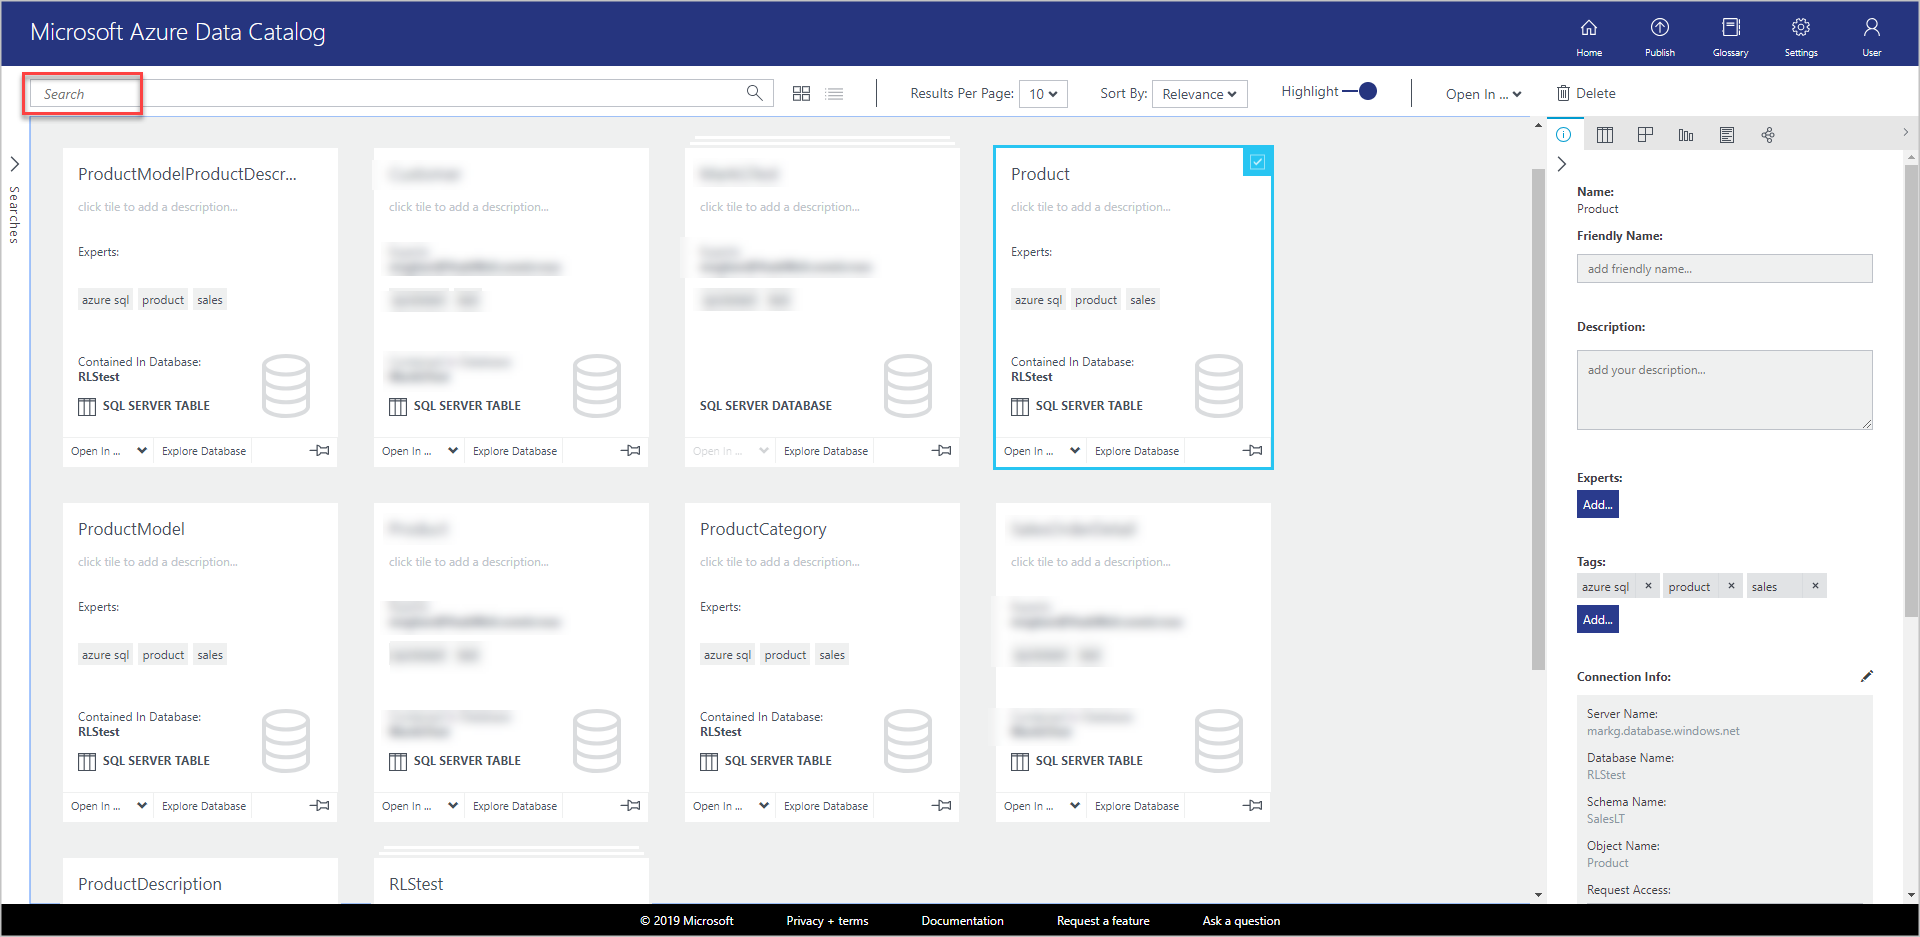 W oknie Microsoft Azure Data Catalog są nowe kafelki w widoku siatki dla każdego z zarejestrowanych obiektów.